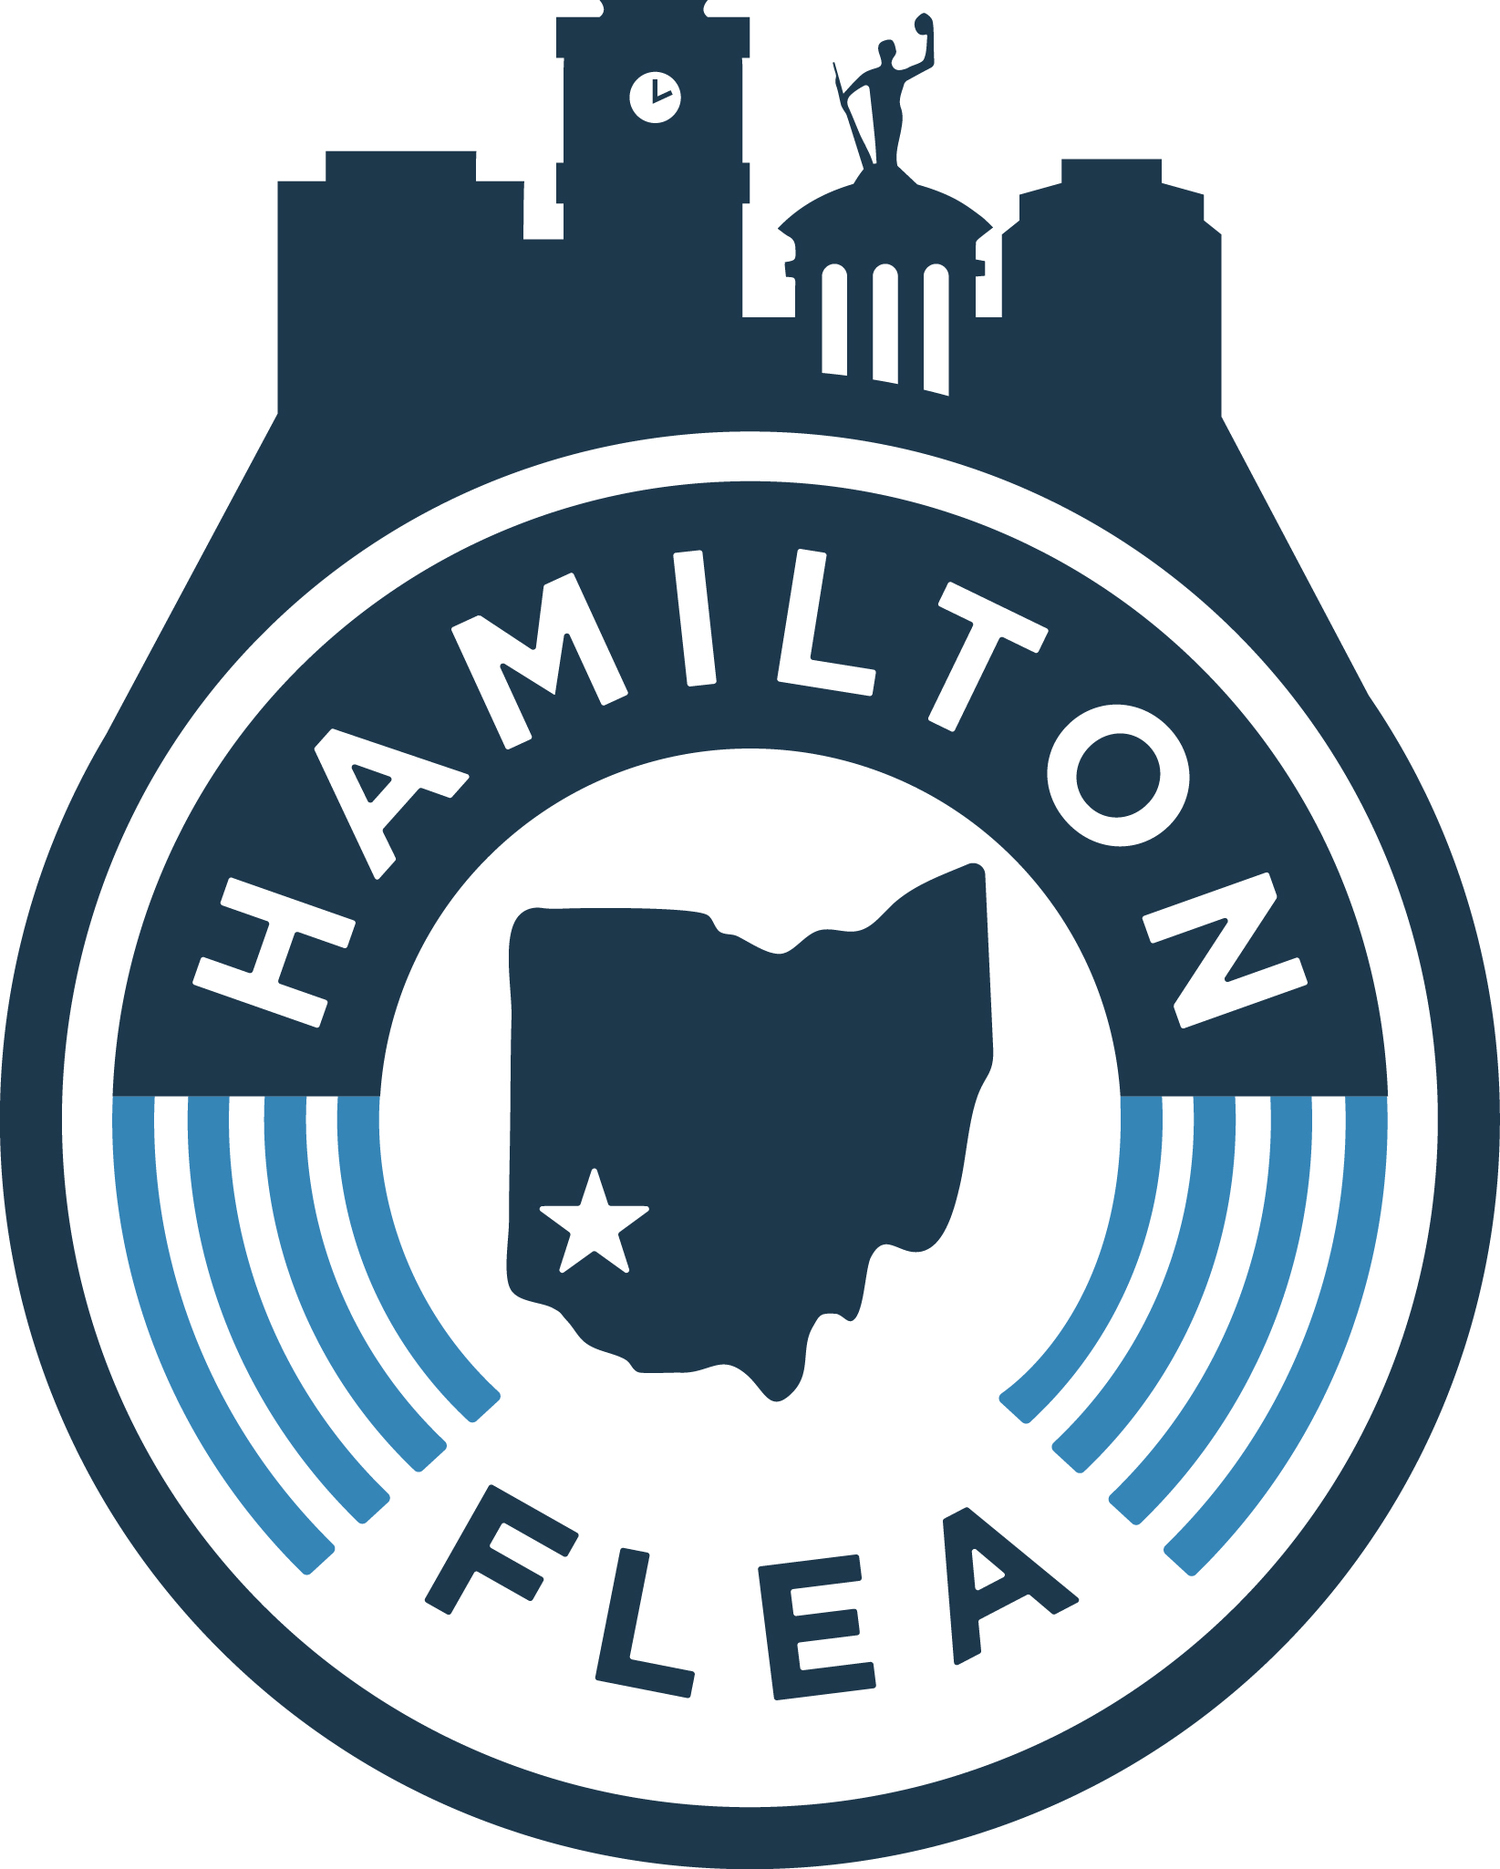 2018 Hamilton Flea Market